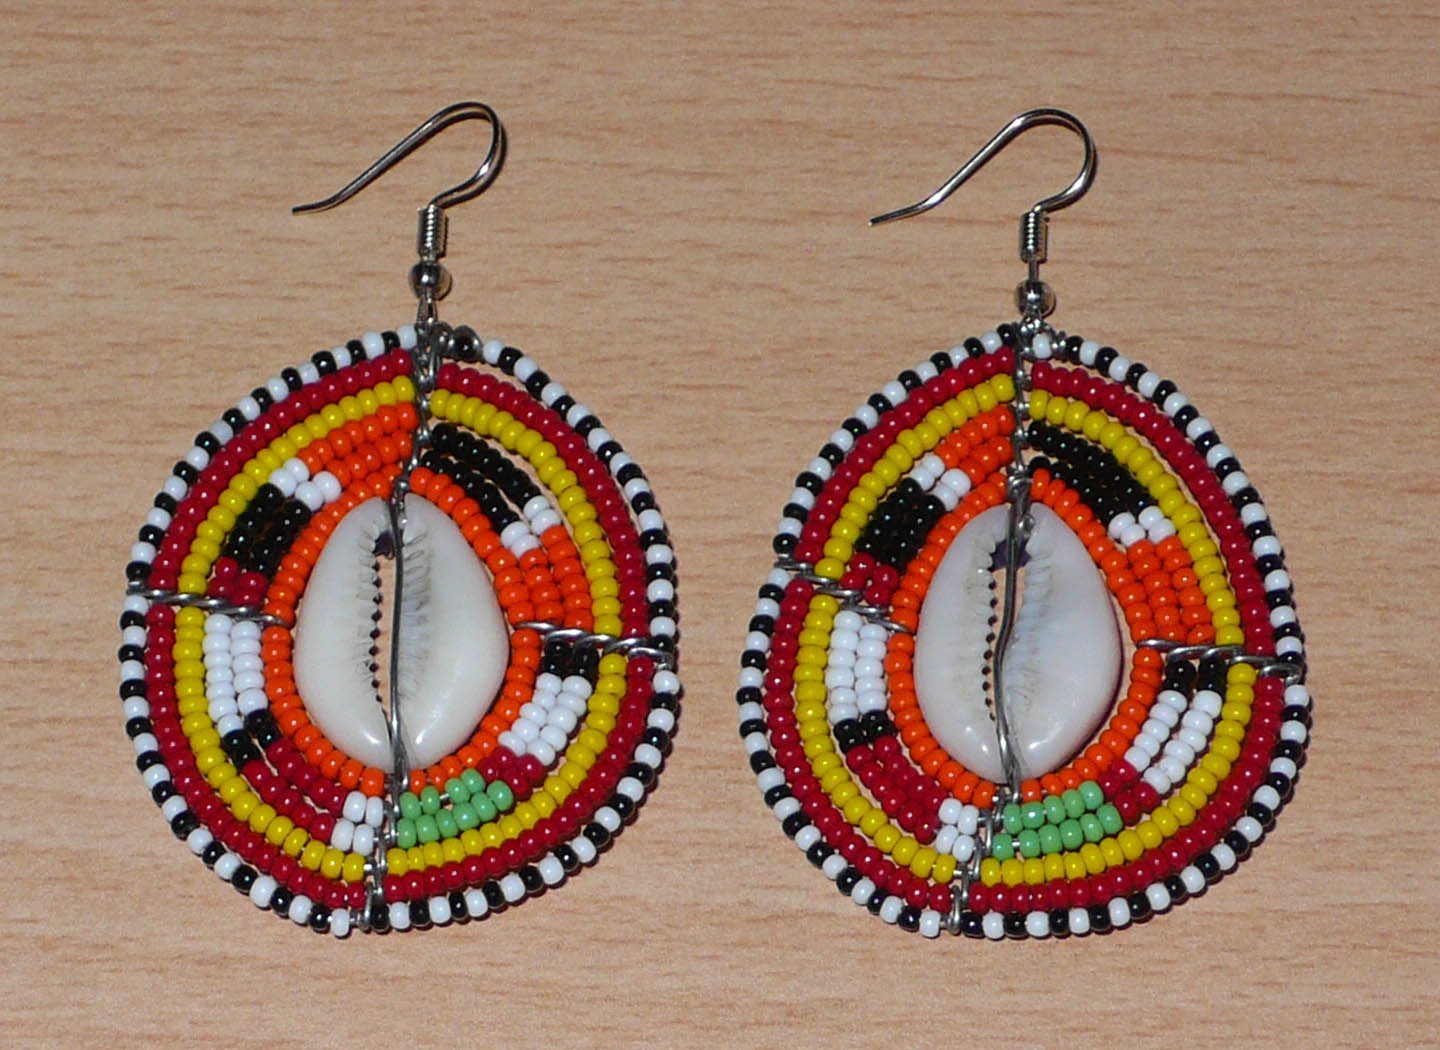 Boucles d'oreilles africaines en forme de boucliers Massai composées de perles et de coquillages. Elles mesurent 7 cm de long et 4 cm de large et se portent sur des oreilles percées. Timeless Fineries